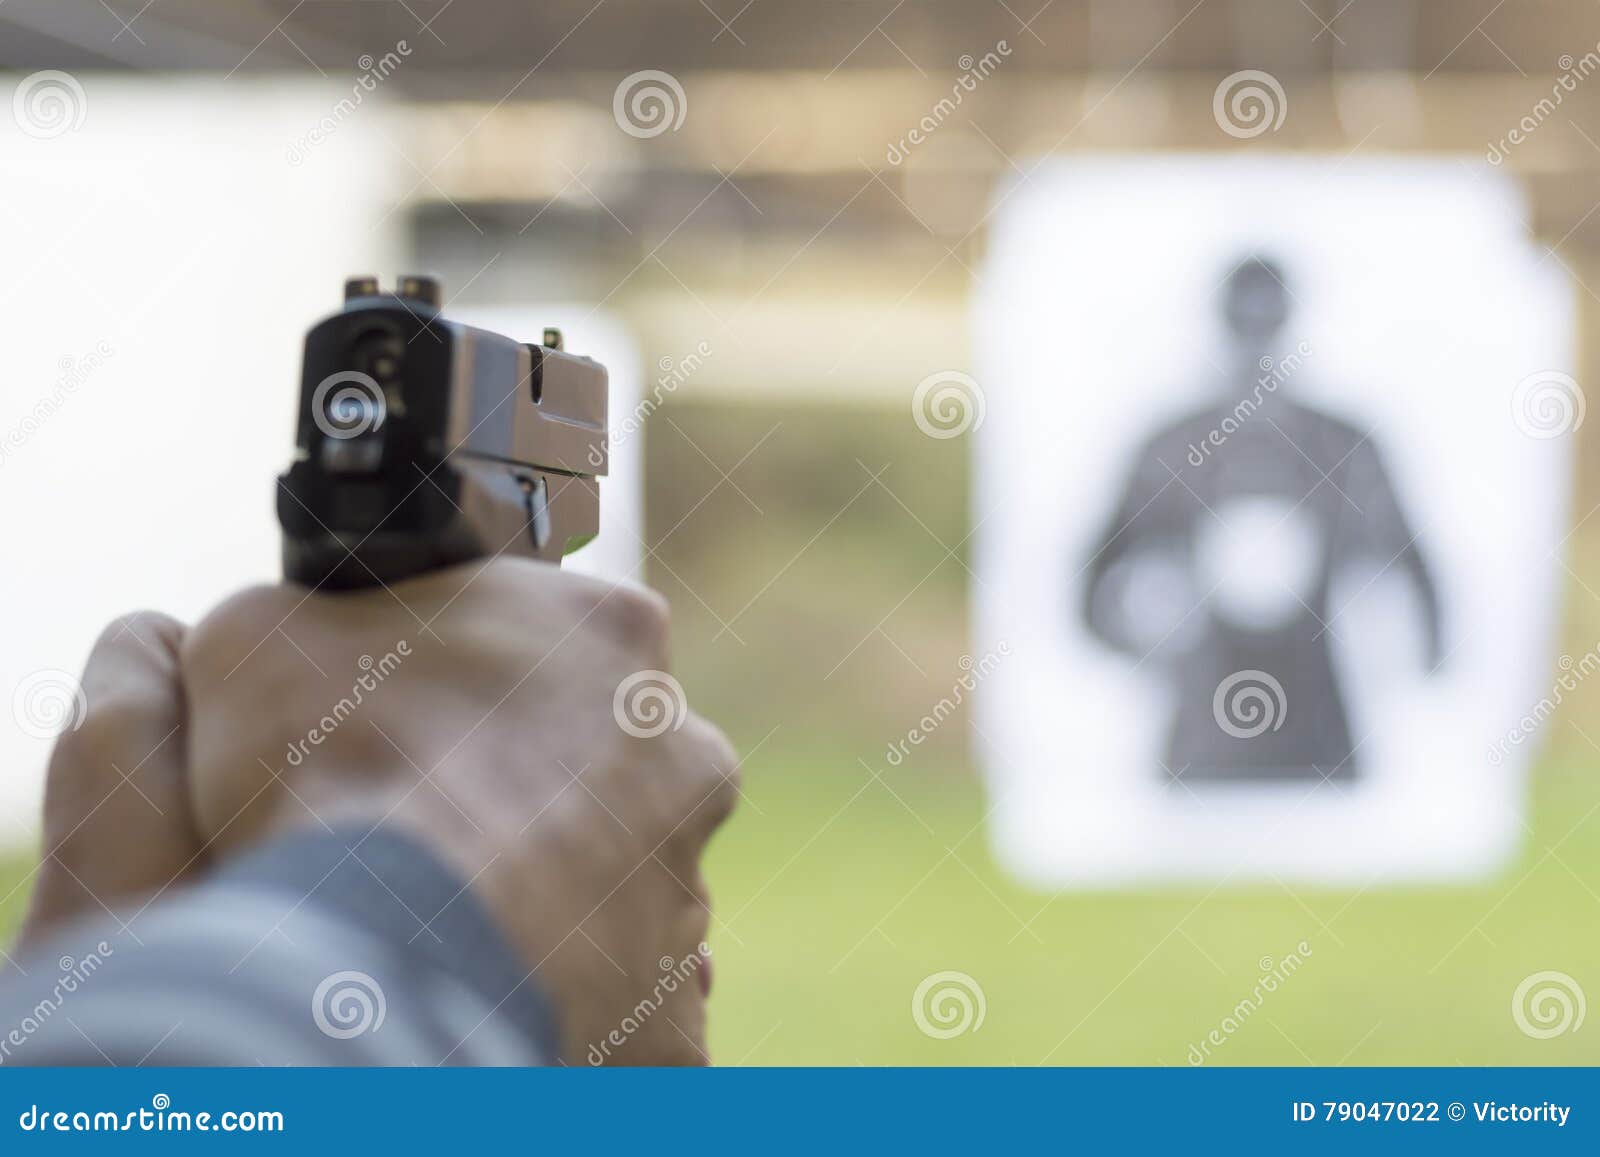 man firing pistol at target in shooting range